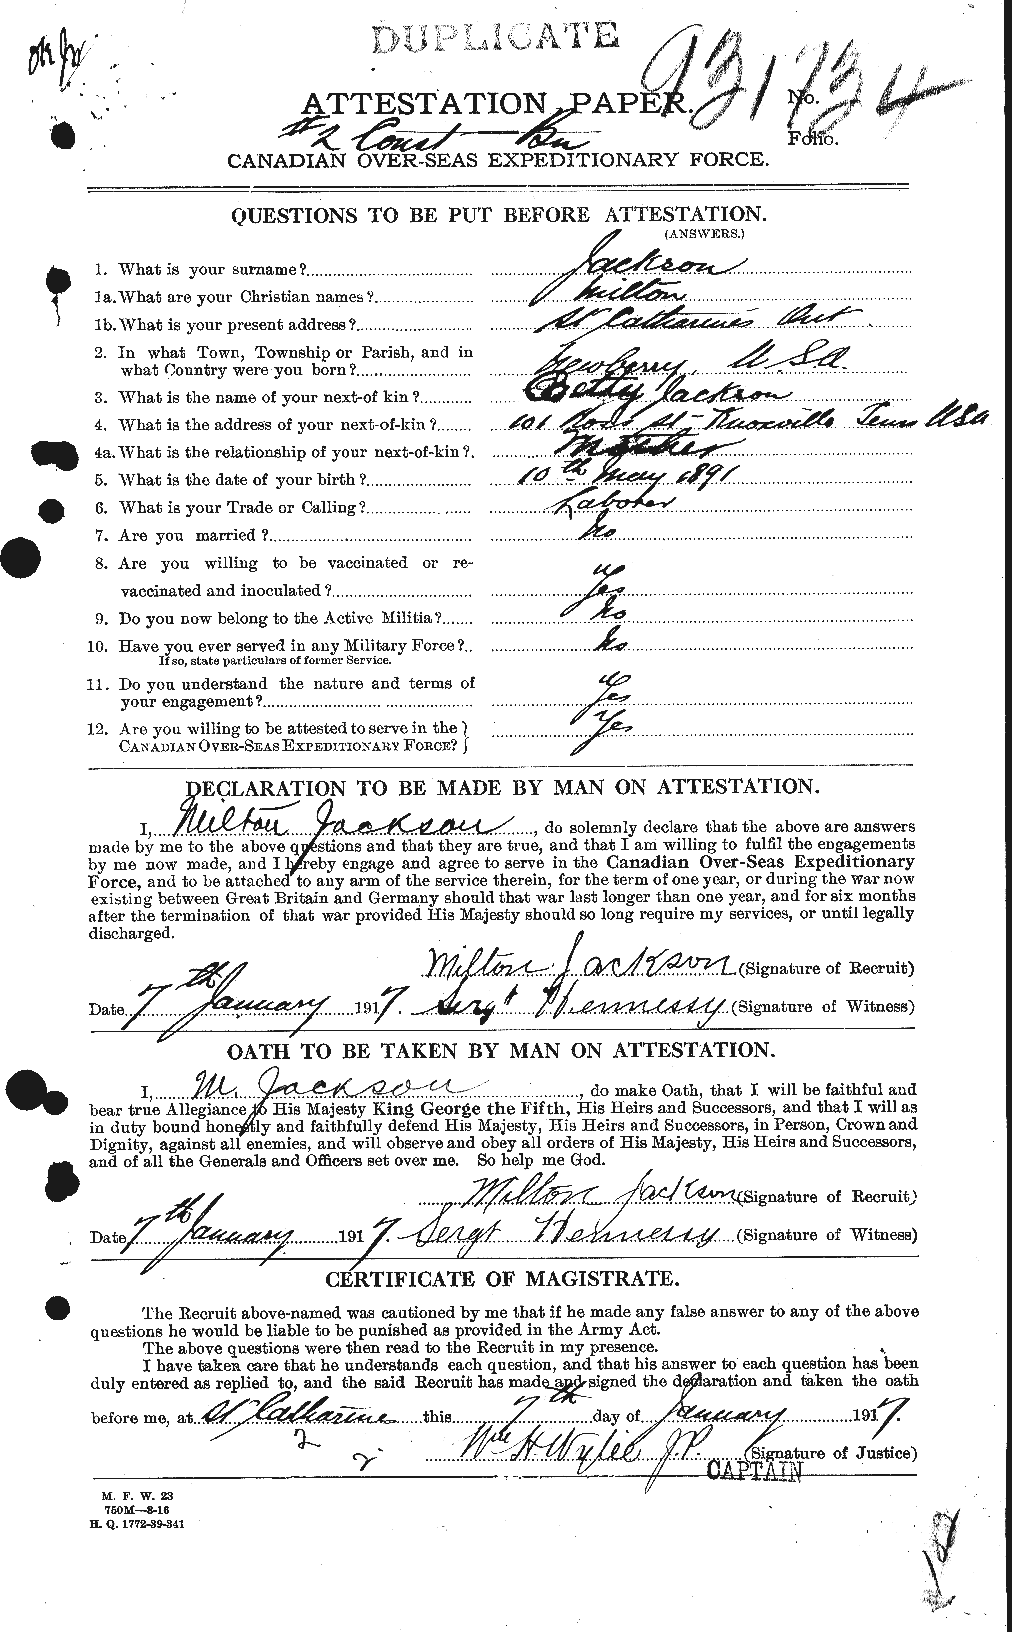 Dossiers du Personnel de la Première Guerre mondiale - CEC 414432a